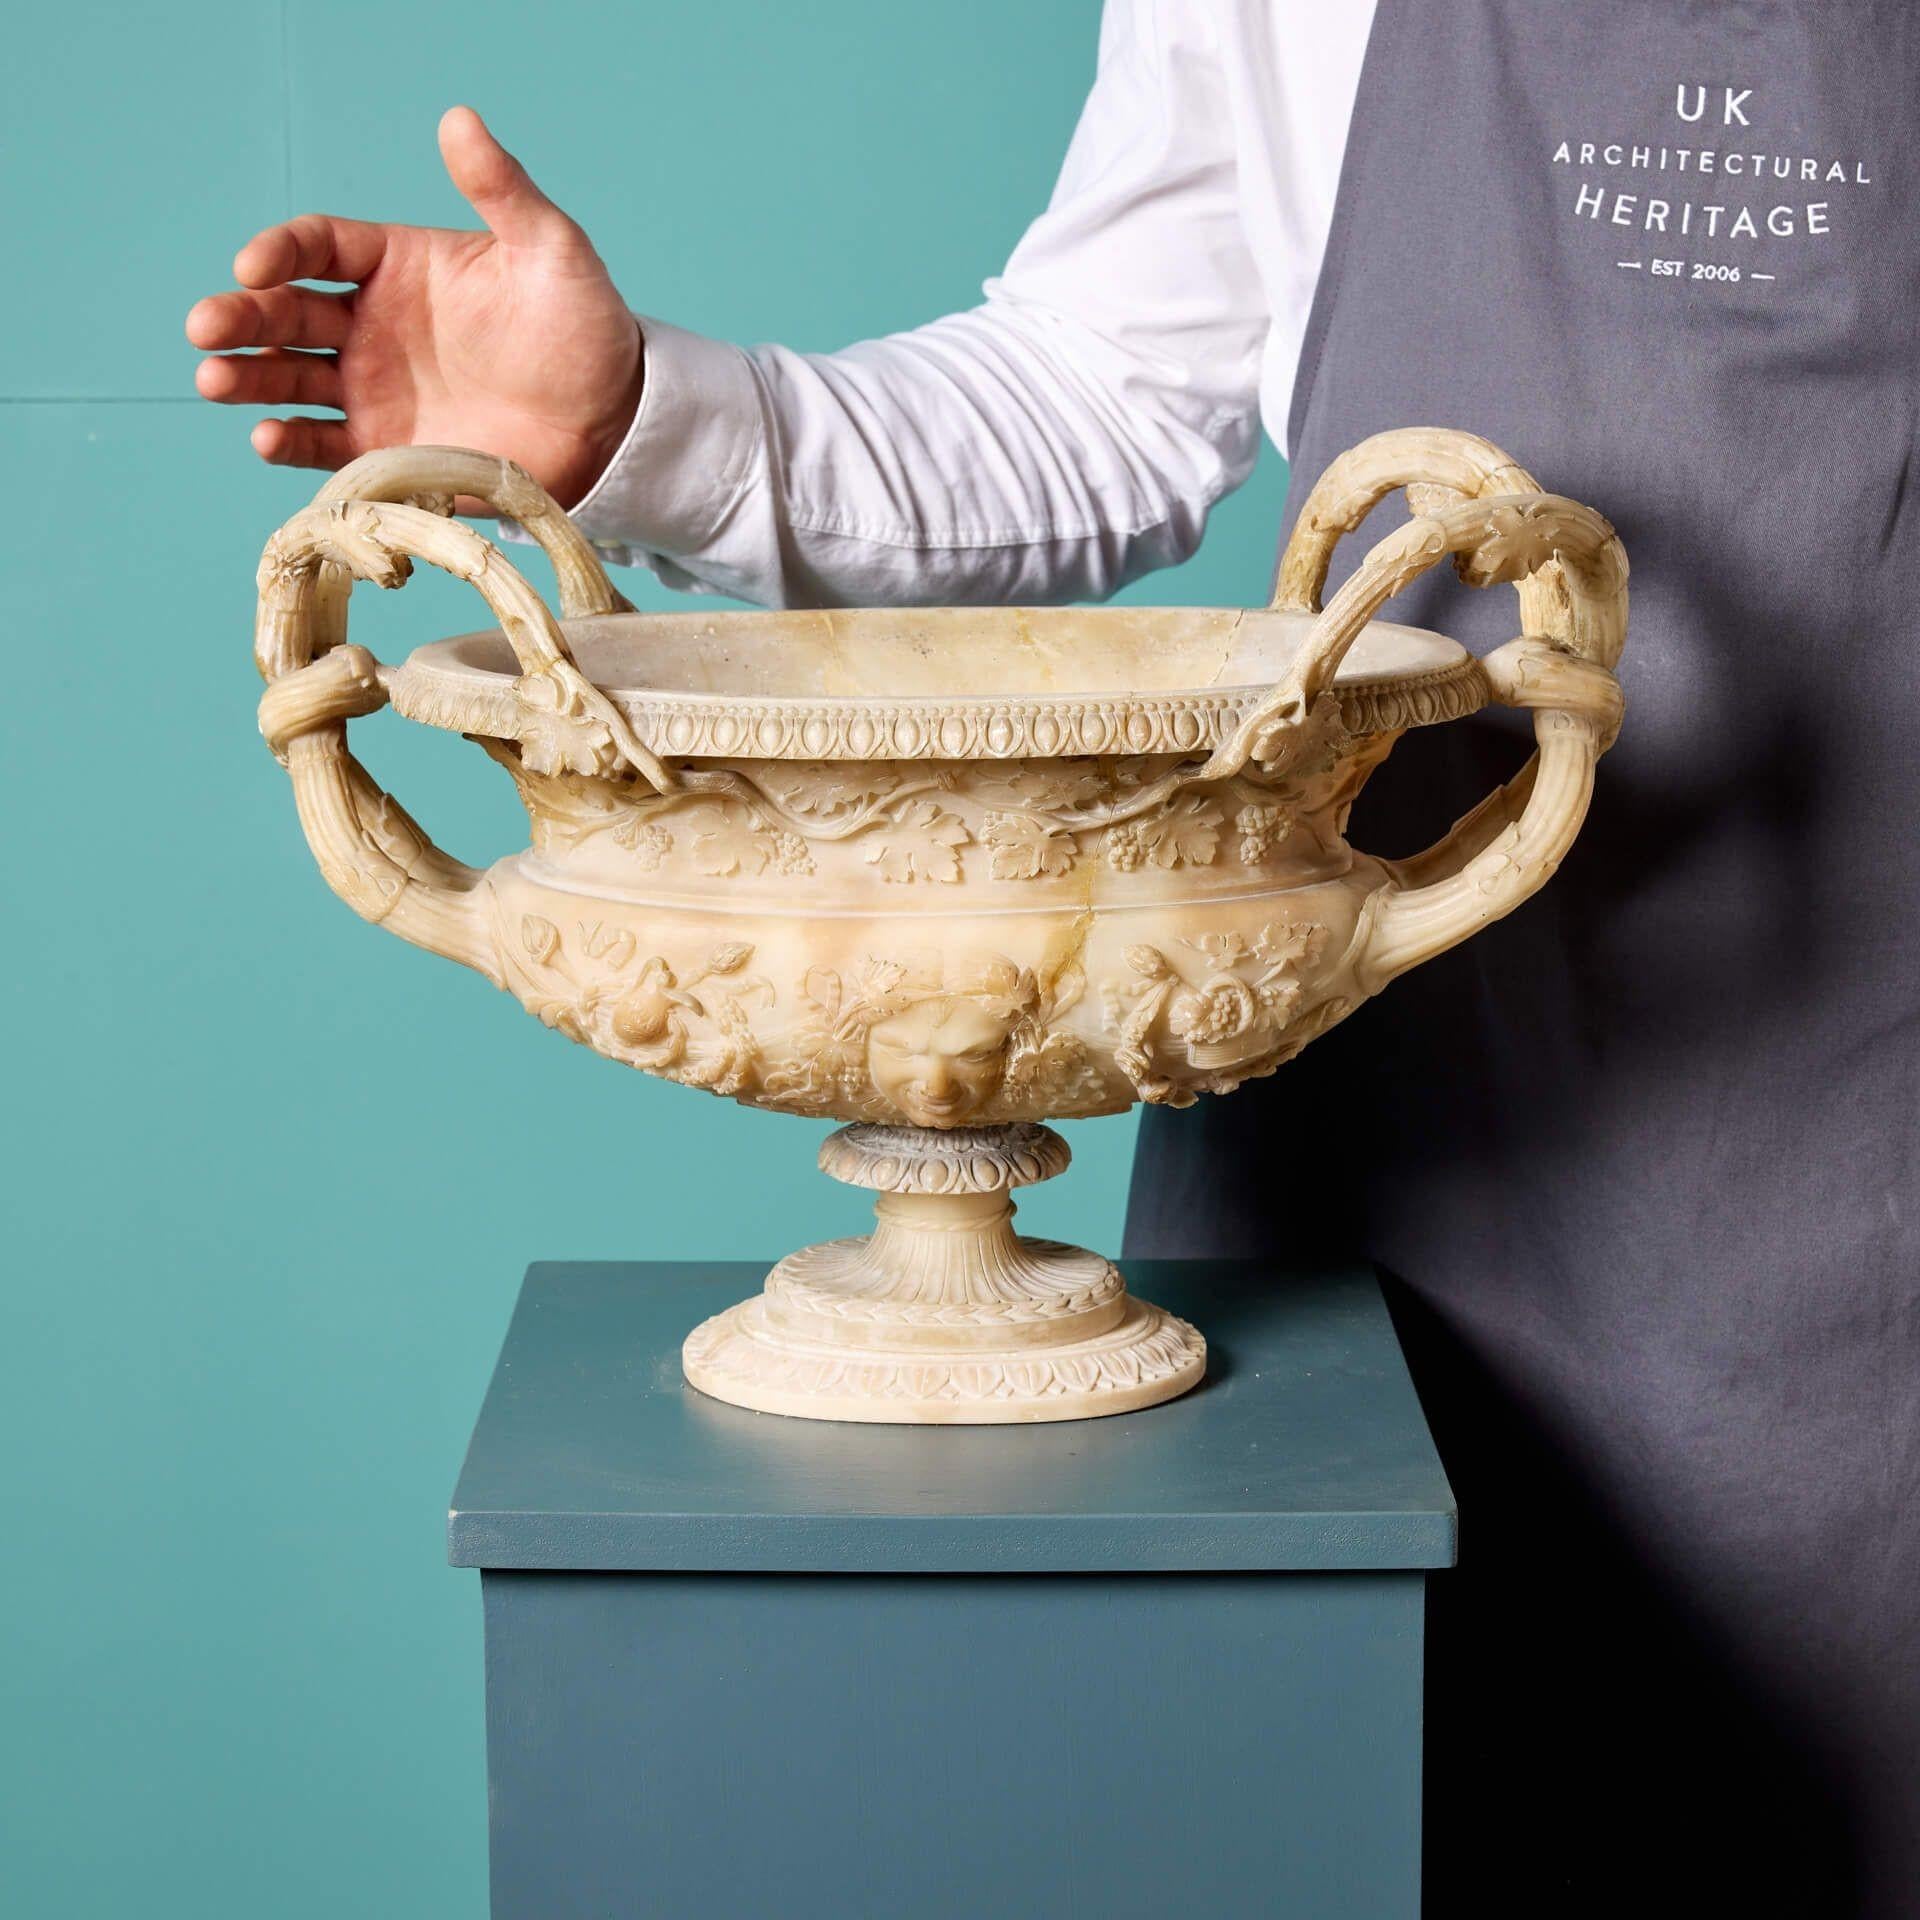 Eine exquisit geschnitzte italienische, antike Alabaster-Vase oder Urne um 1860. Die Details dieser schönen Urne bieten einen Einblick in die Stile des 19. Jahrhunderts in Italien, der Körper fein geschnitzt mit Masken und Blattwerk auf beiden